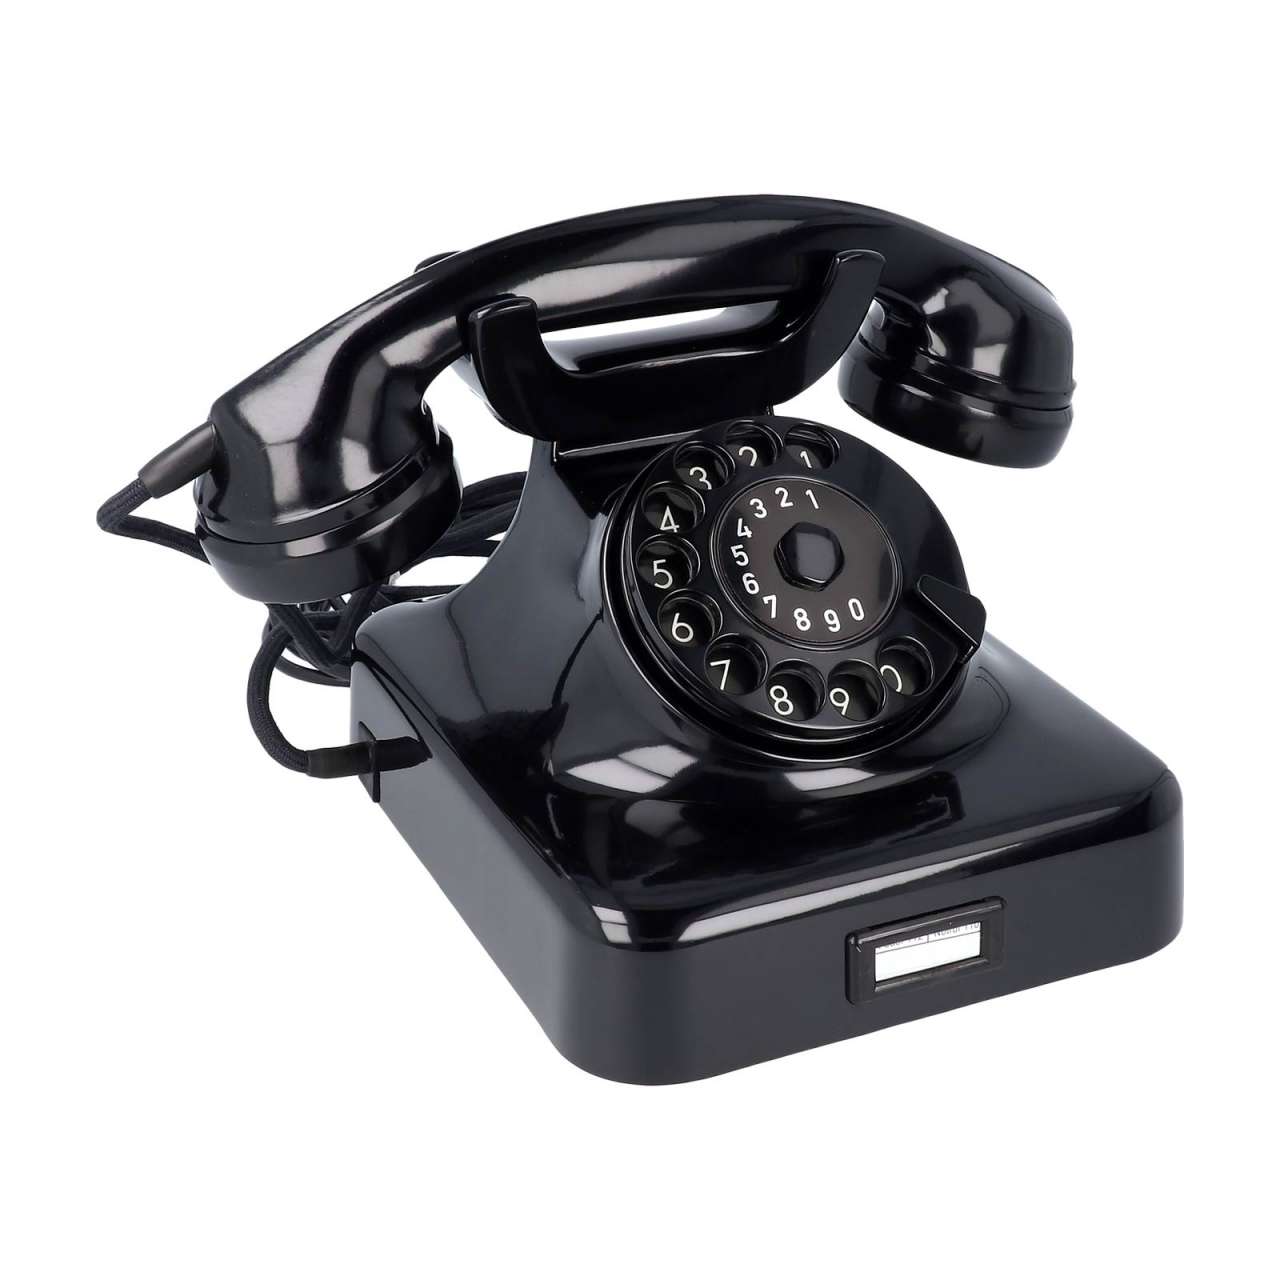 Wählscheibentelefon kaufen (W48) – Nostalgie Telefon